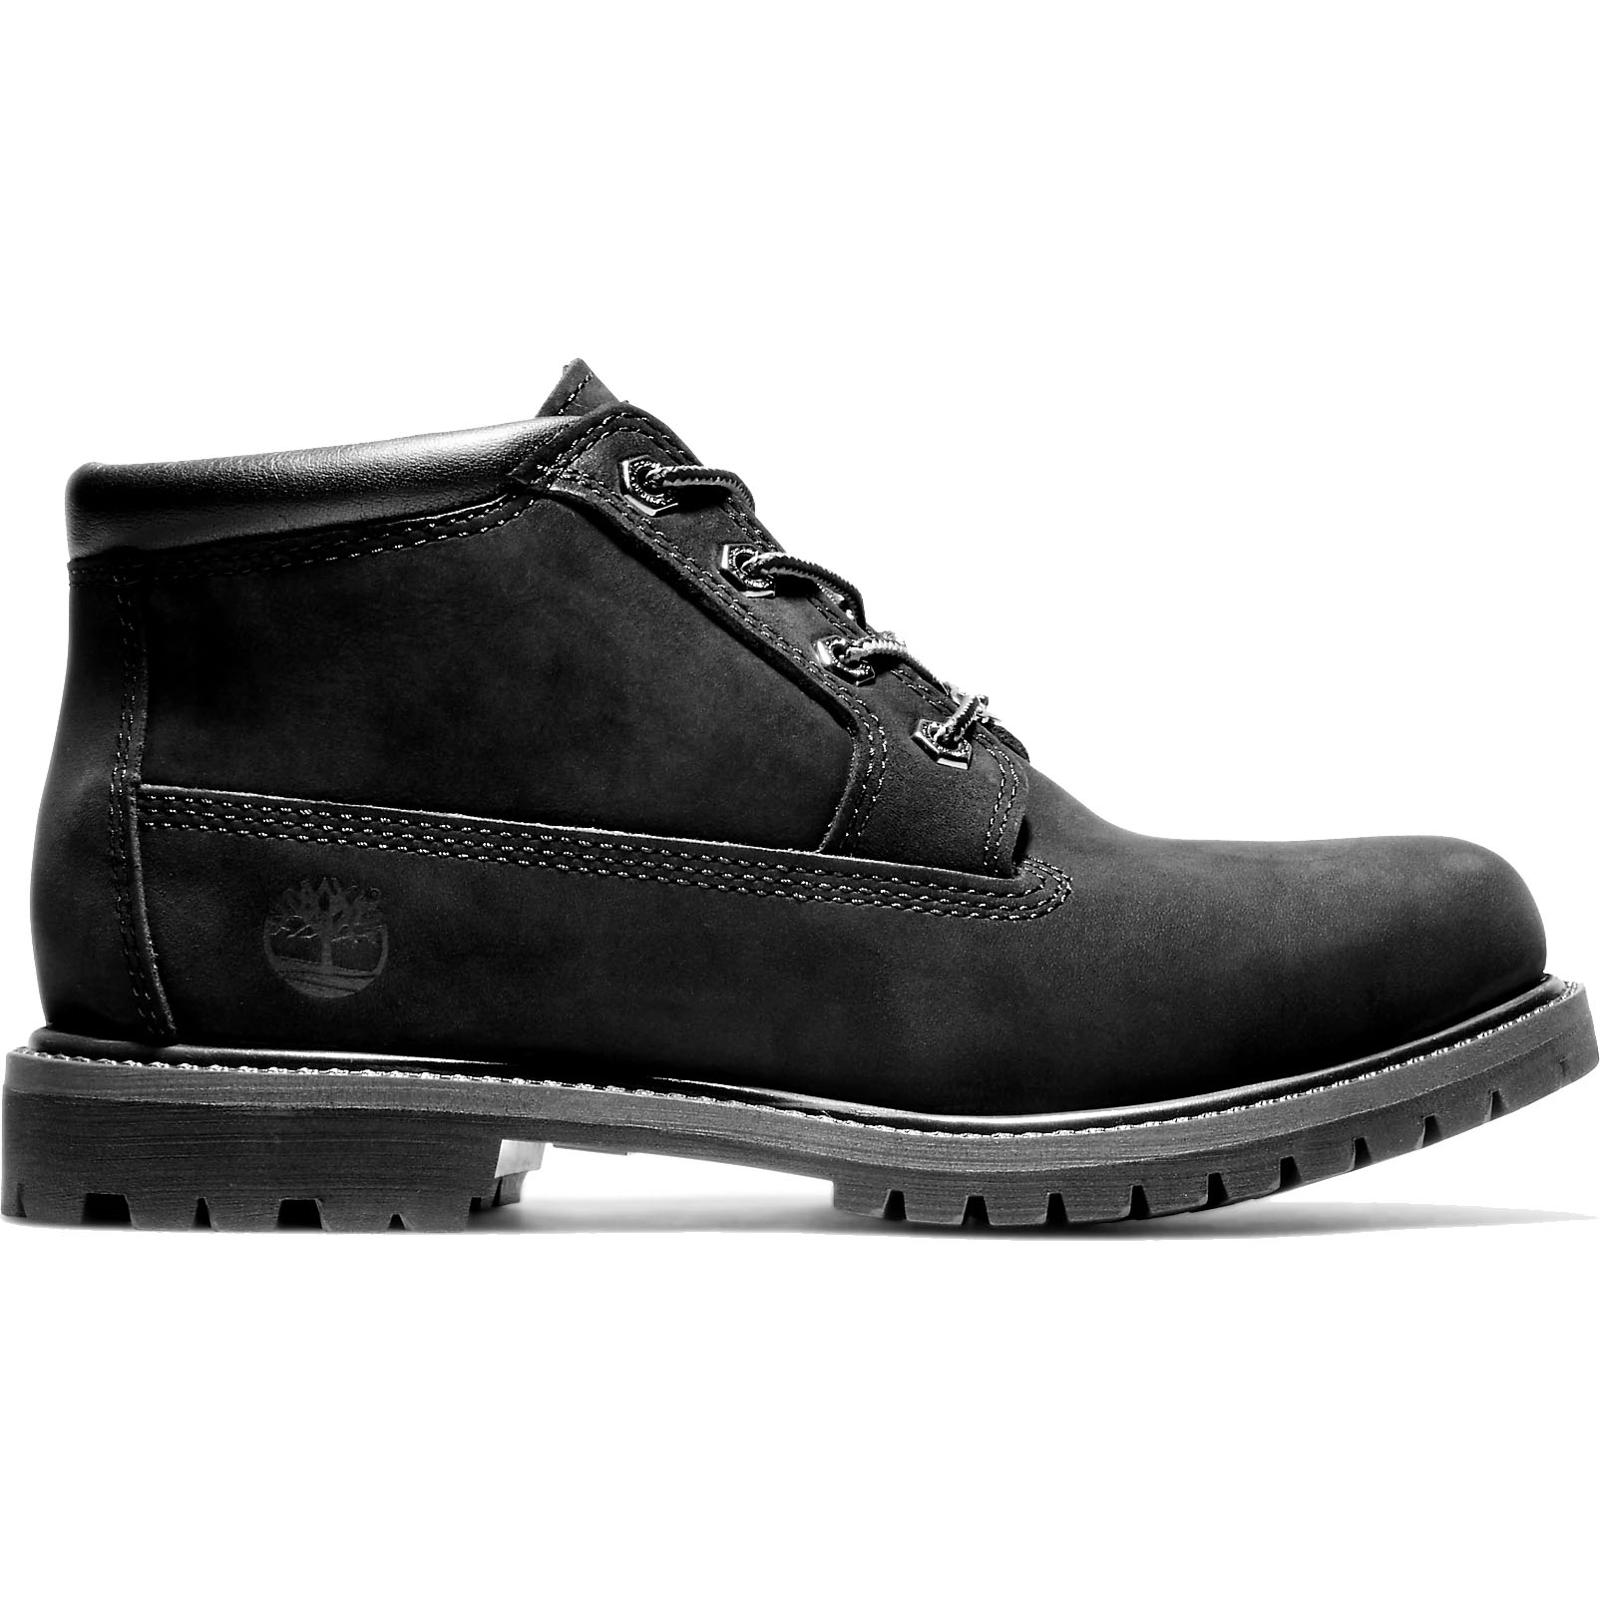 Timberland Womens Nellie Waterproof Chukka Boots - Black 23398 Mens 2951